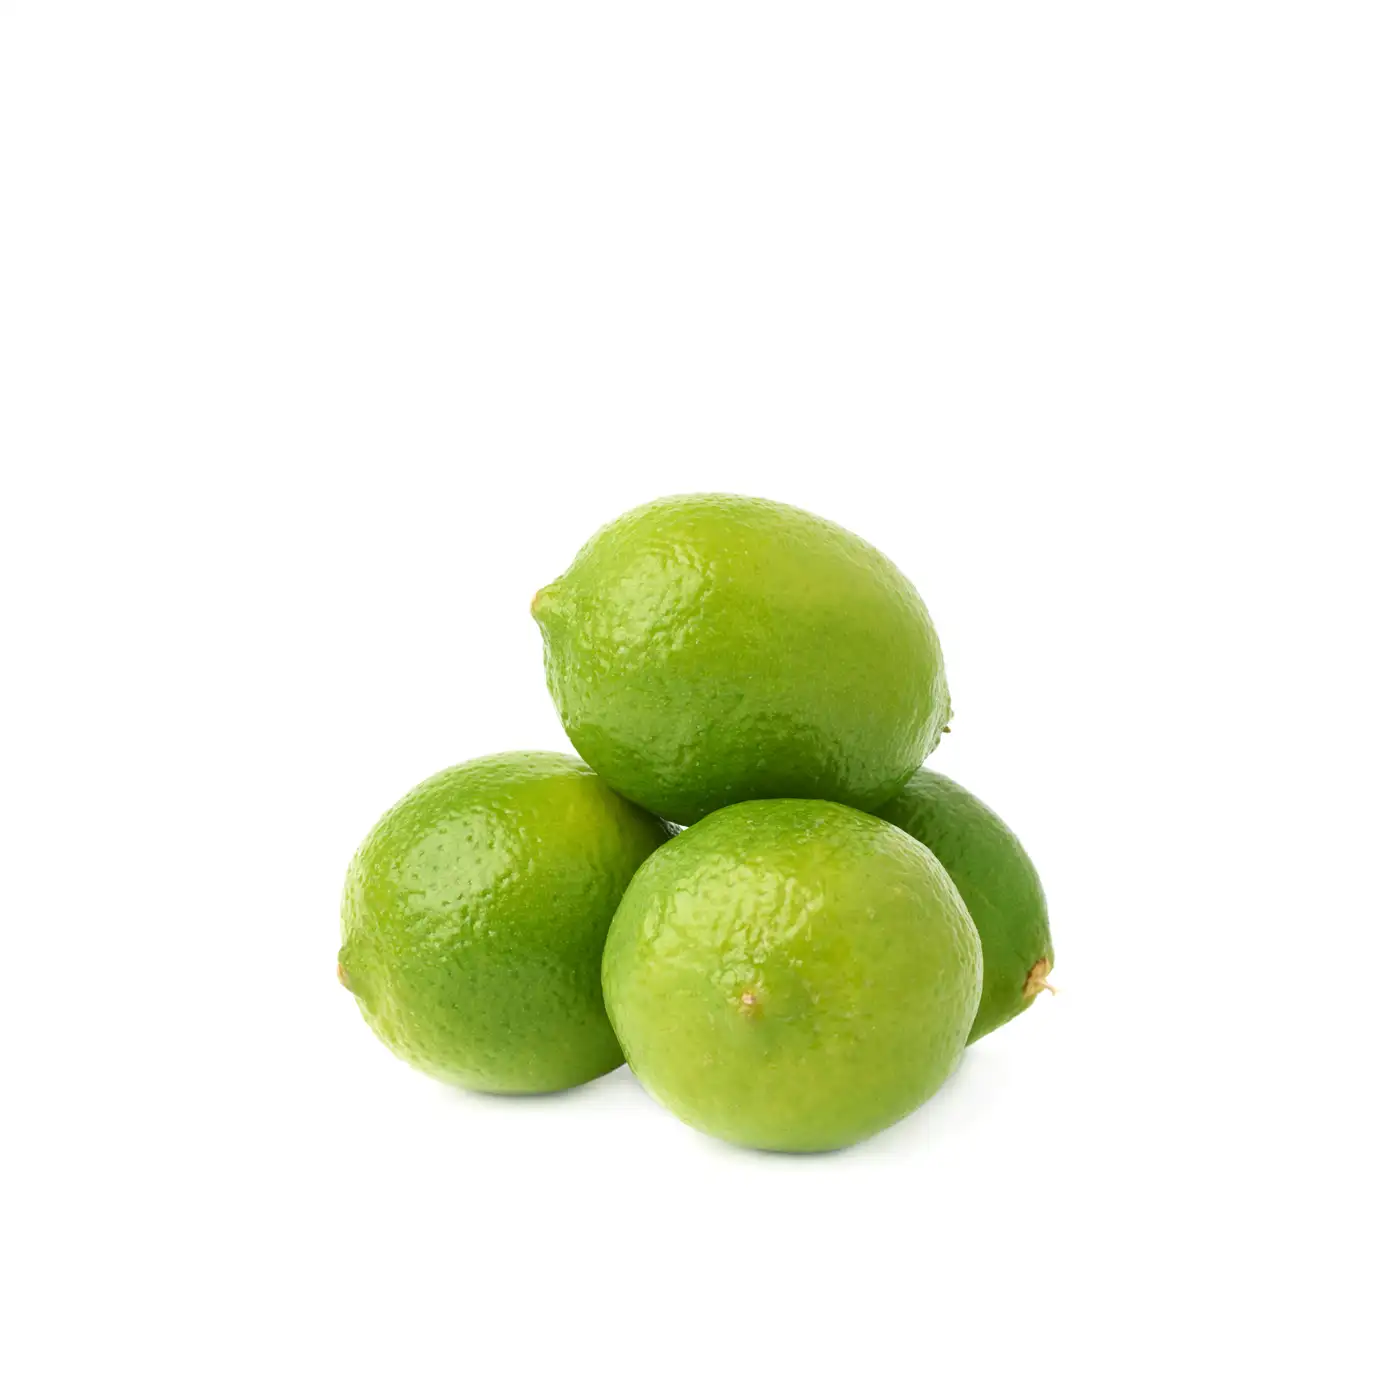 Lime fraîche sans graines, fruits frais de qualité pour cuisiner ou boire, 100g